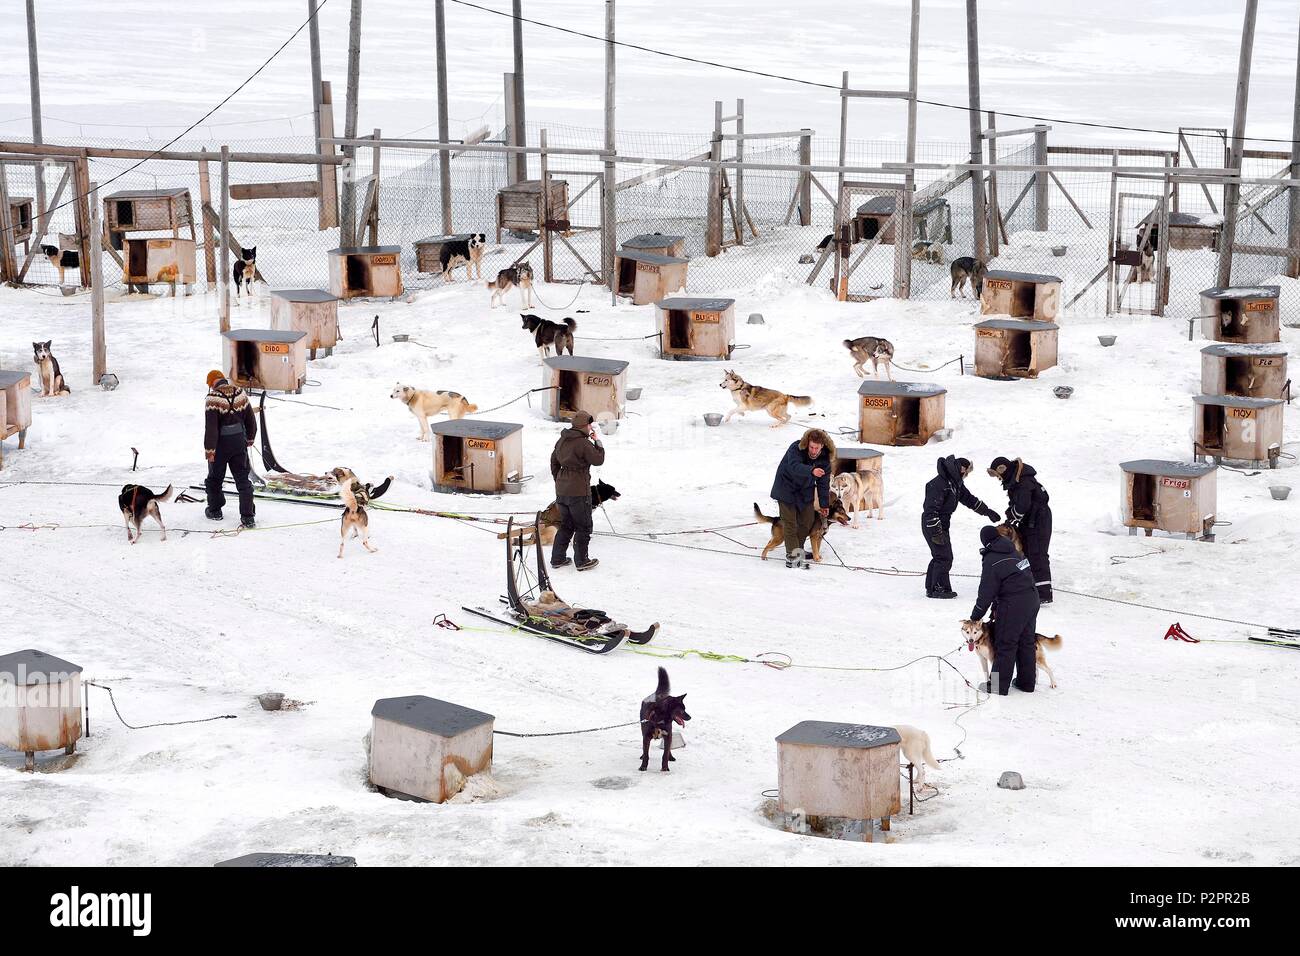 Norvegia Isole Svalbard, Spitzbergen, Adventdalen Valley vicino a Longyearbyen, allevamento di cani da slitta, Huskies attendere al loro allevamento per essere prelevati per tirare slitte Foto Stock